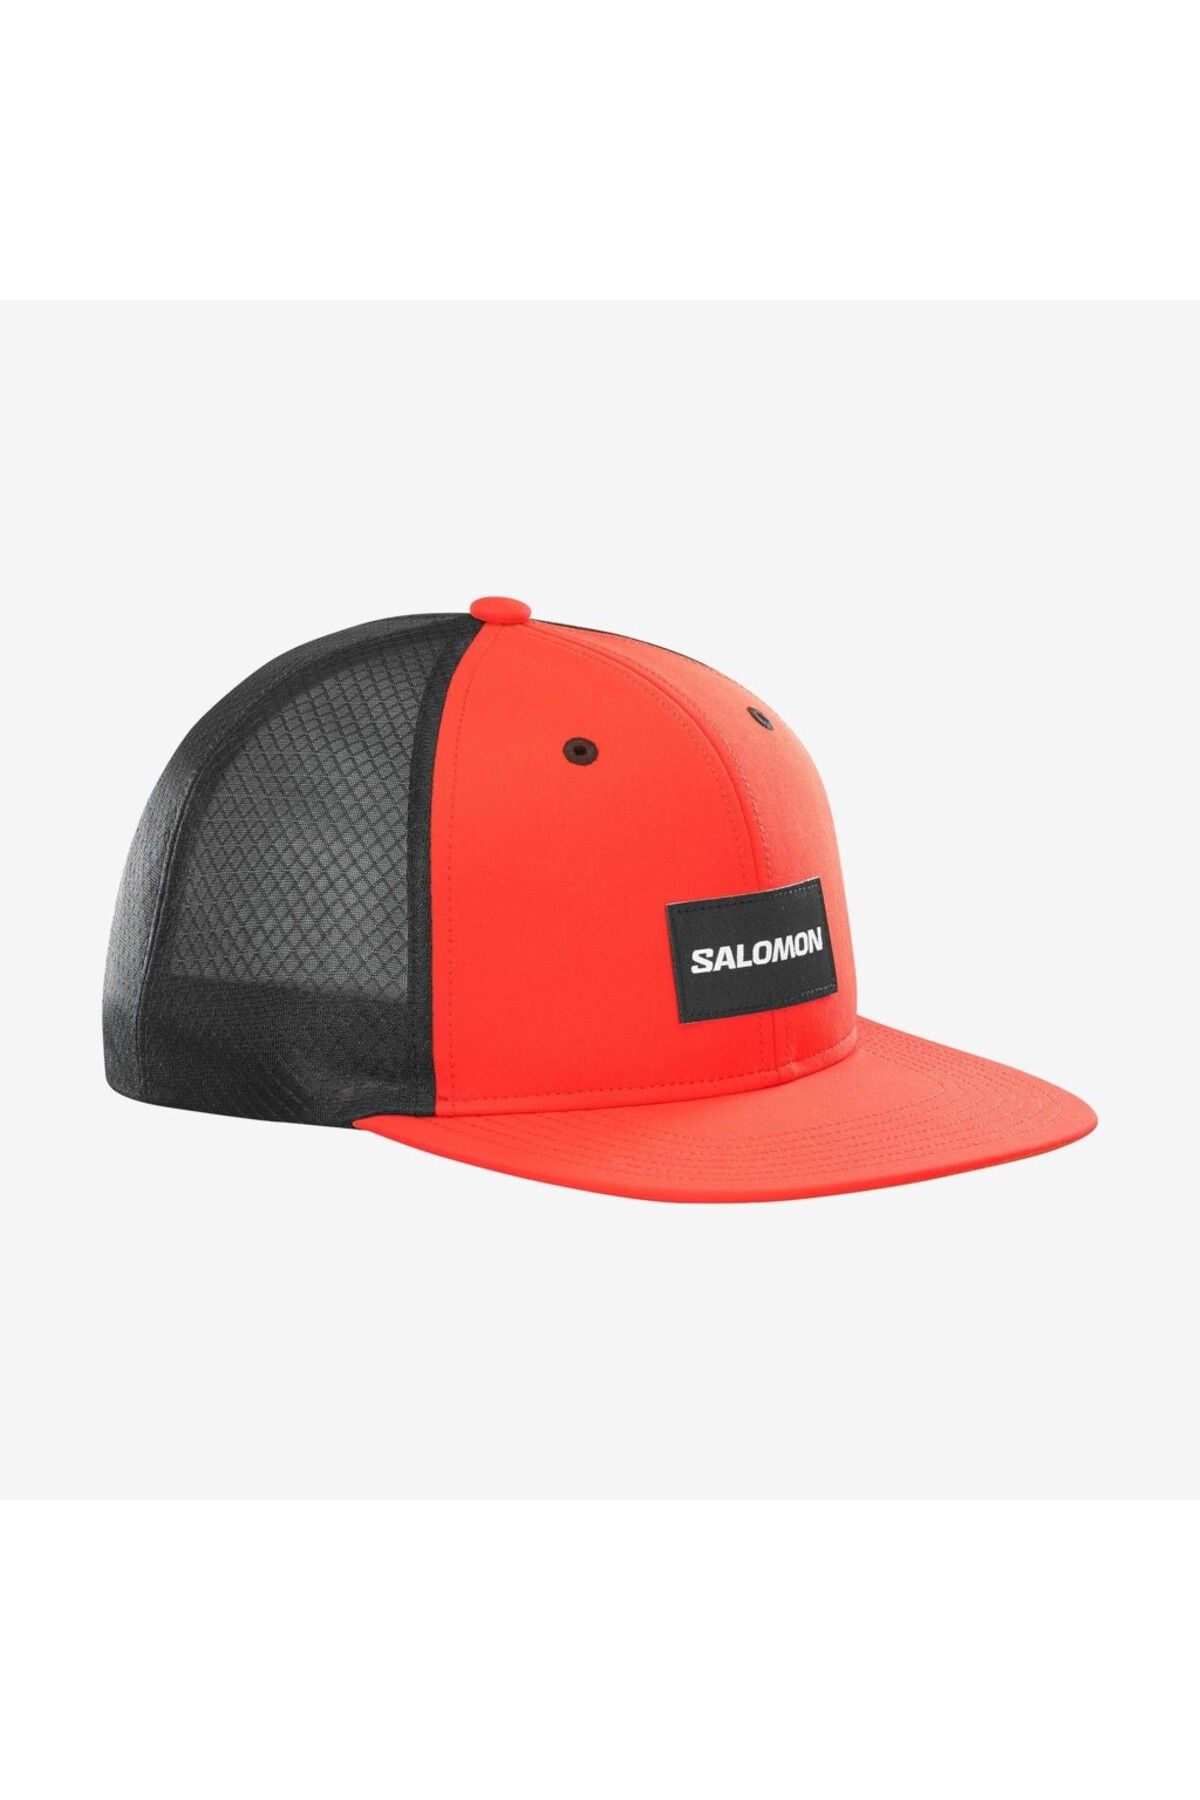 Salomon Trucker Flat Unisex Kırmızı Şapka